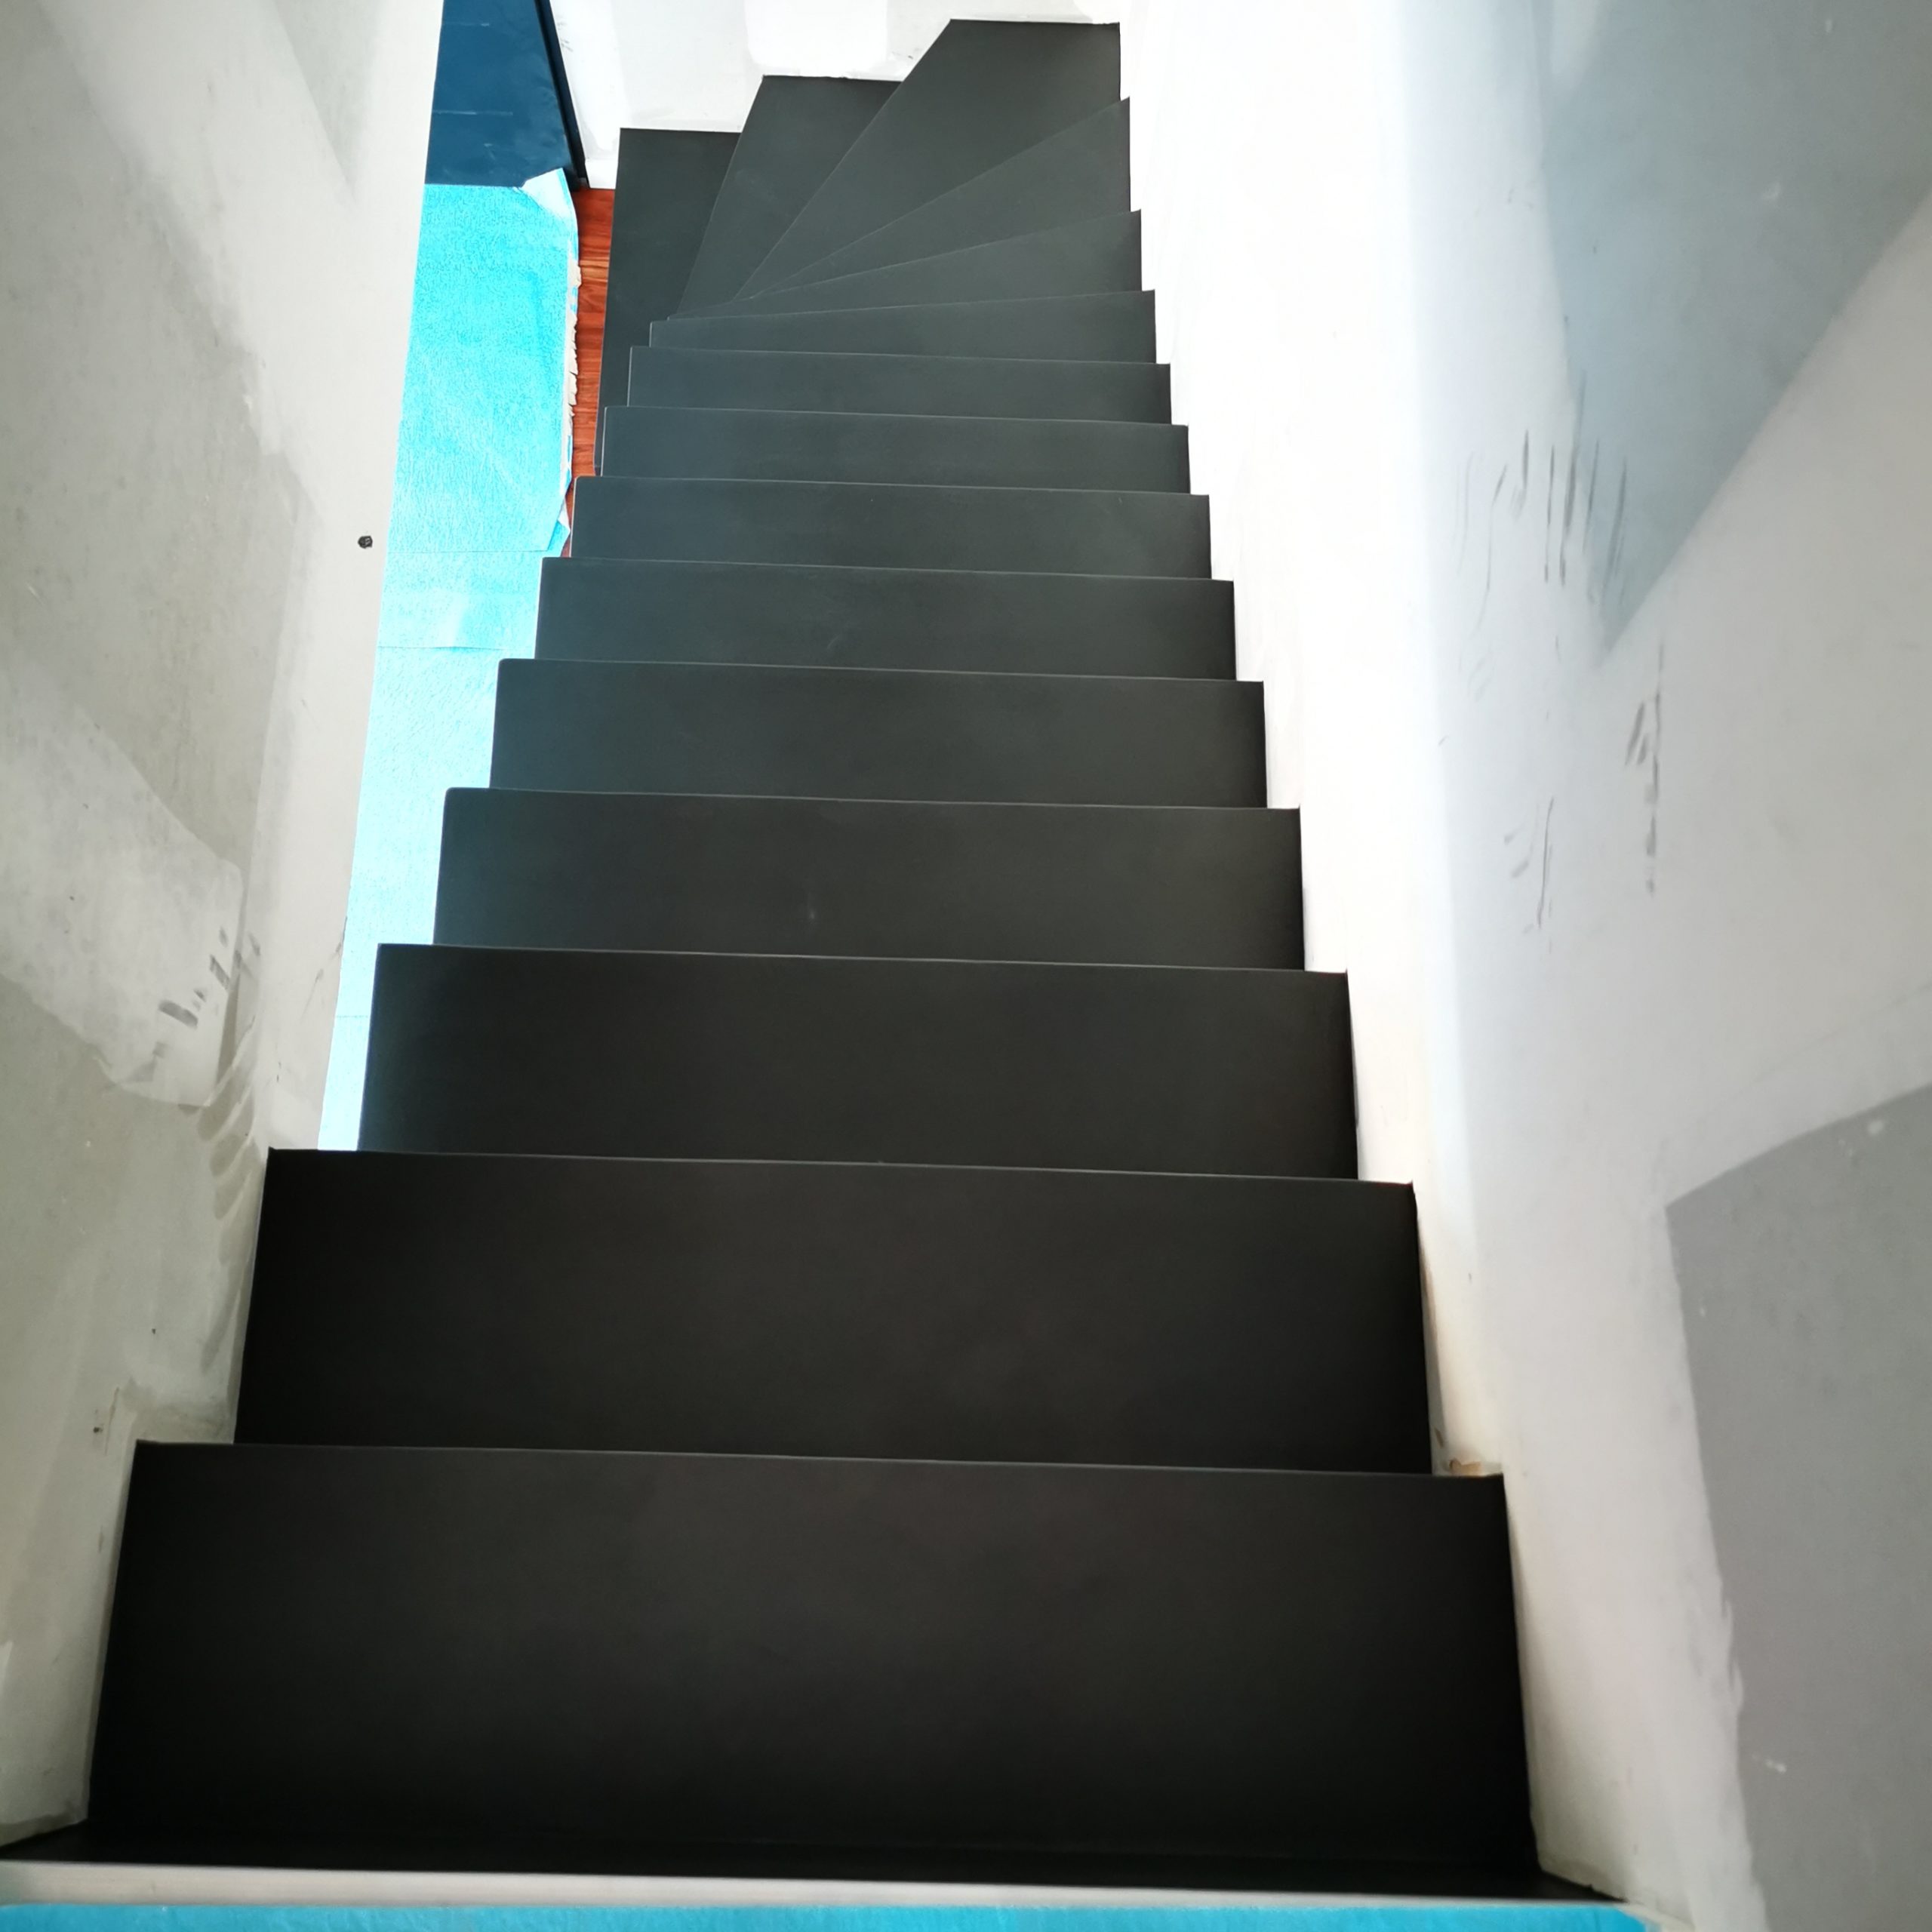 Beton ciré sur un escalier dans une maison individuelle